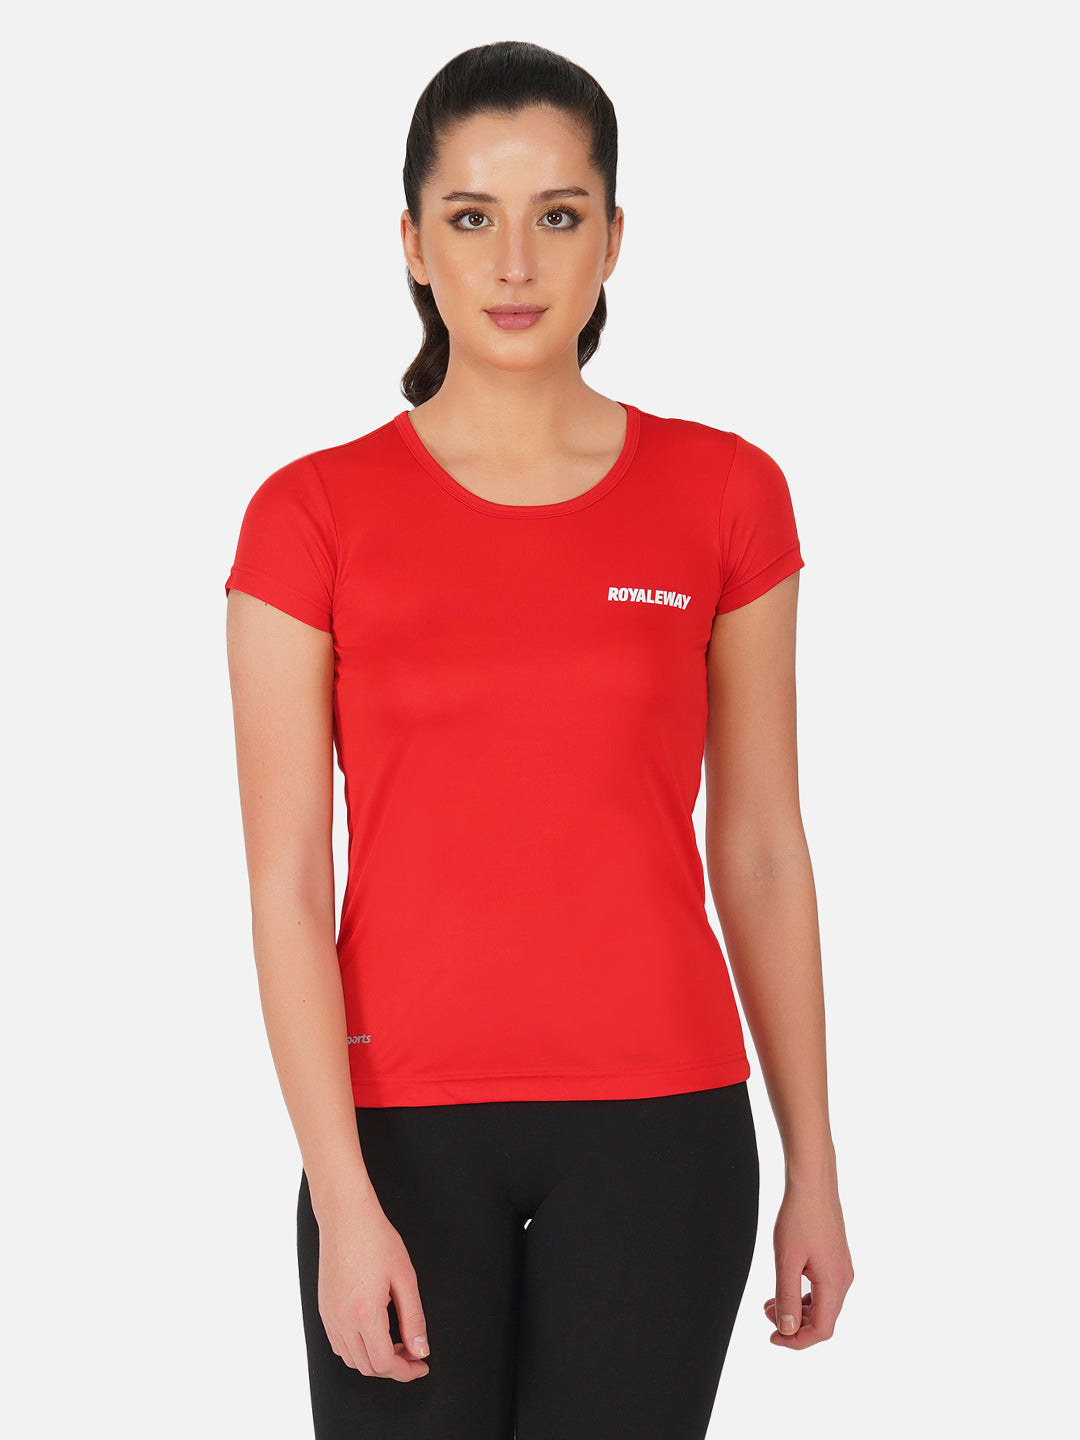 DriSOFT T Shirt Top Red Women RWW2057